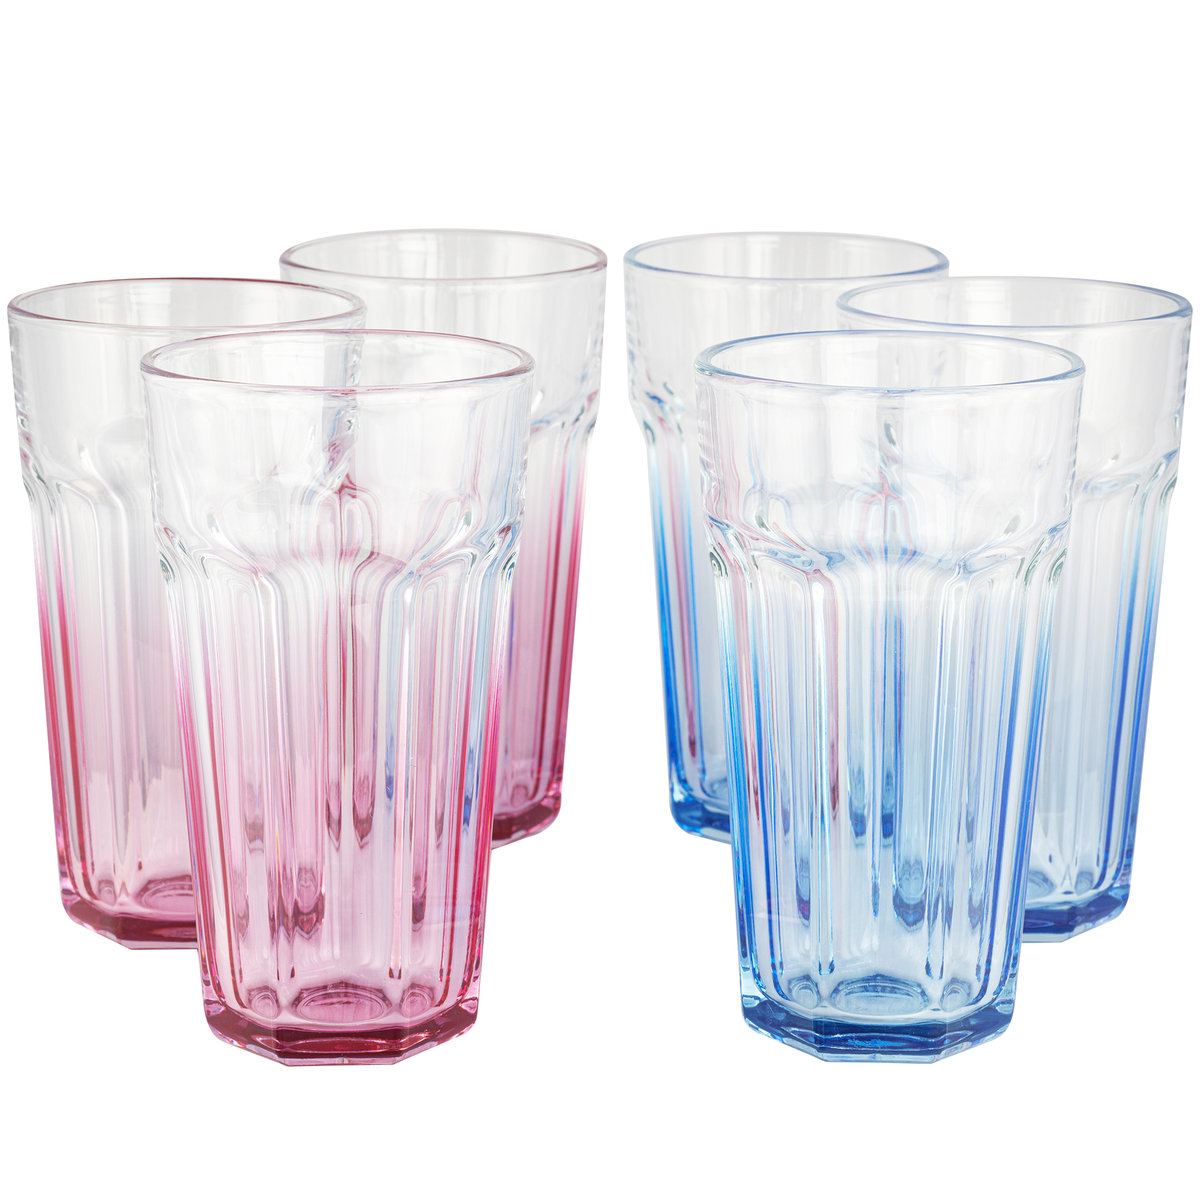 Bardzo duże szklanki XXL do napojów Gigi ombre różowe niebieskie 700 ml